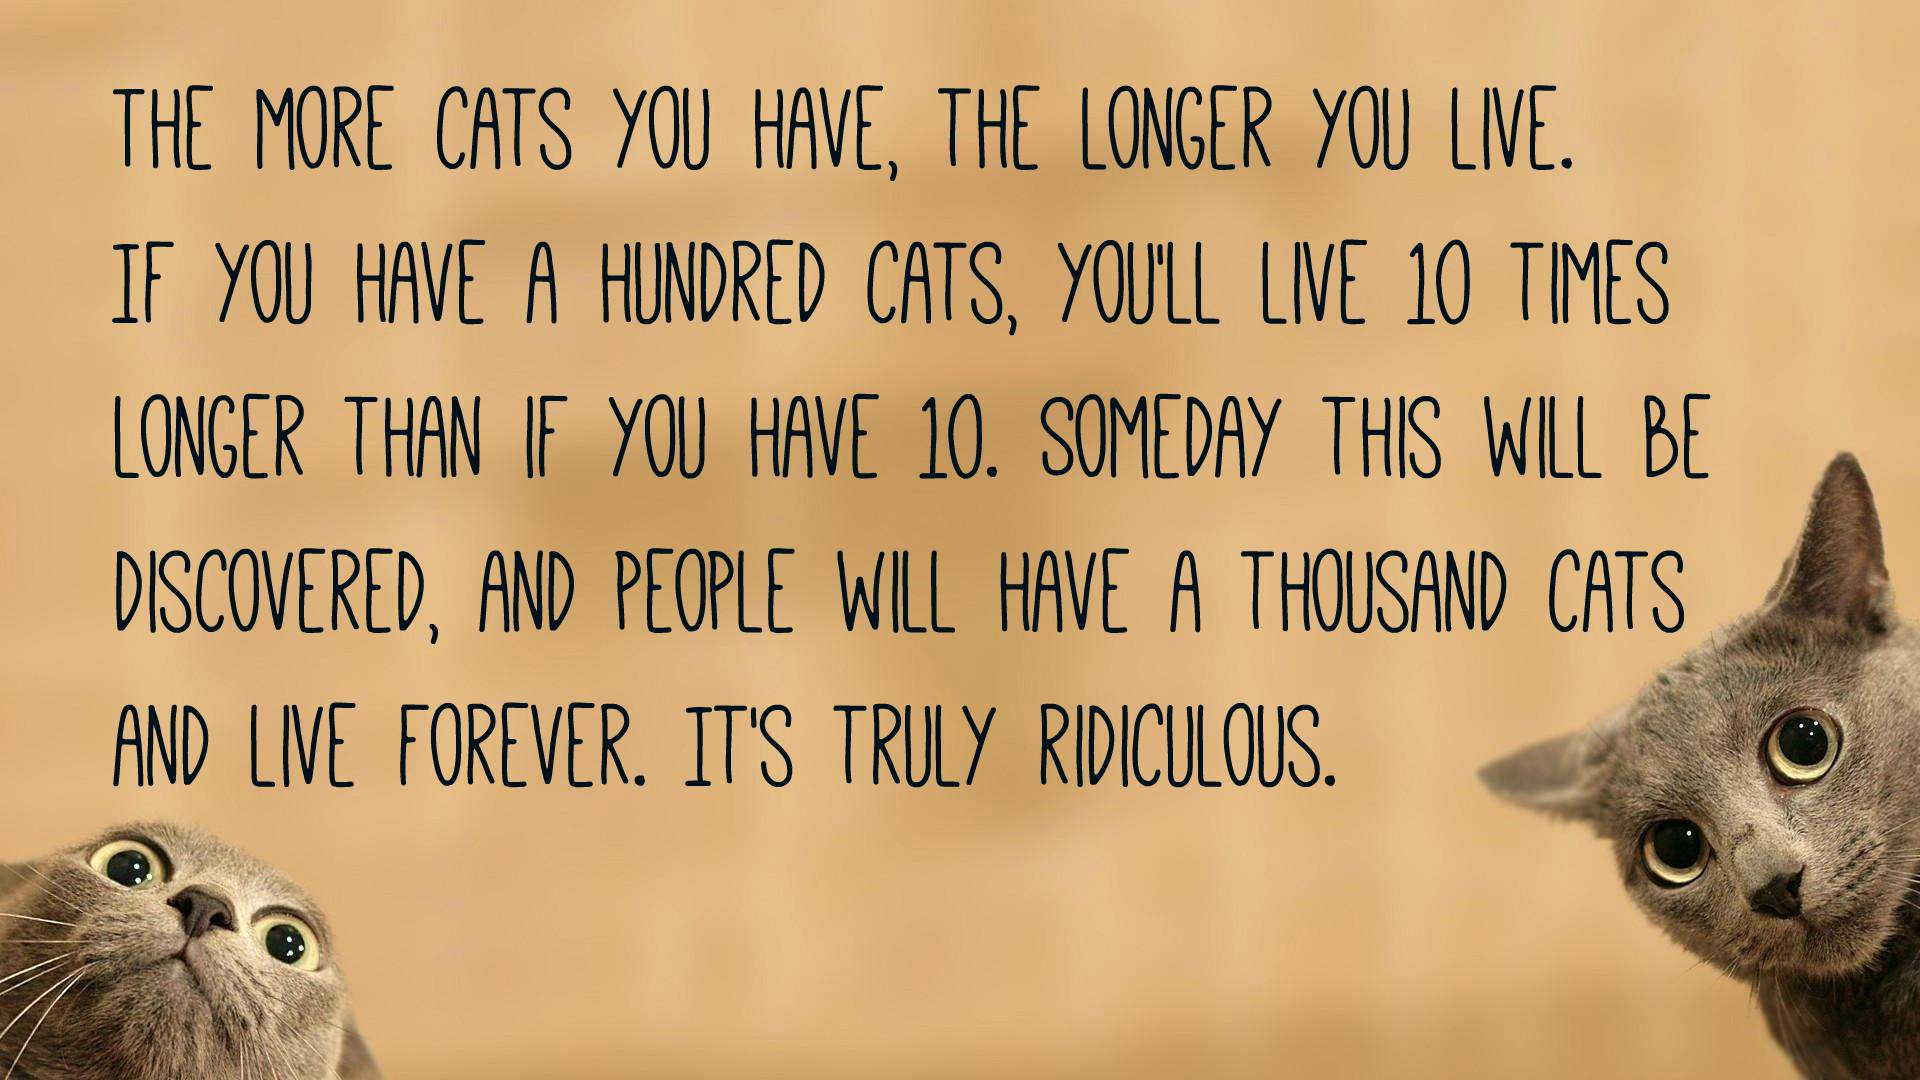 Cat Quotes